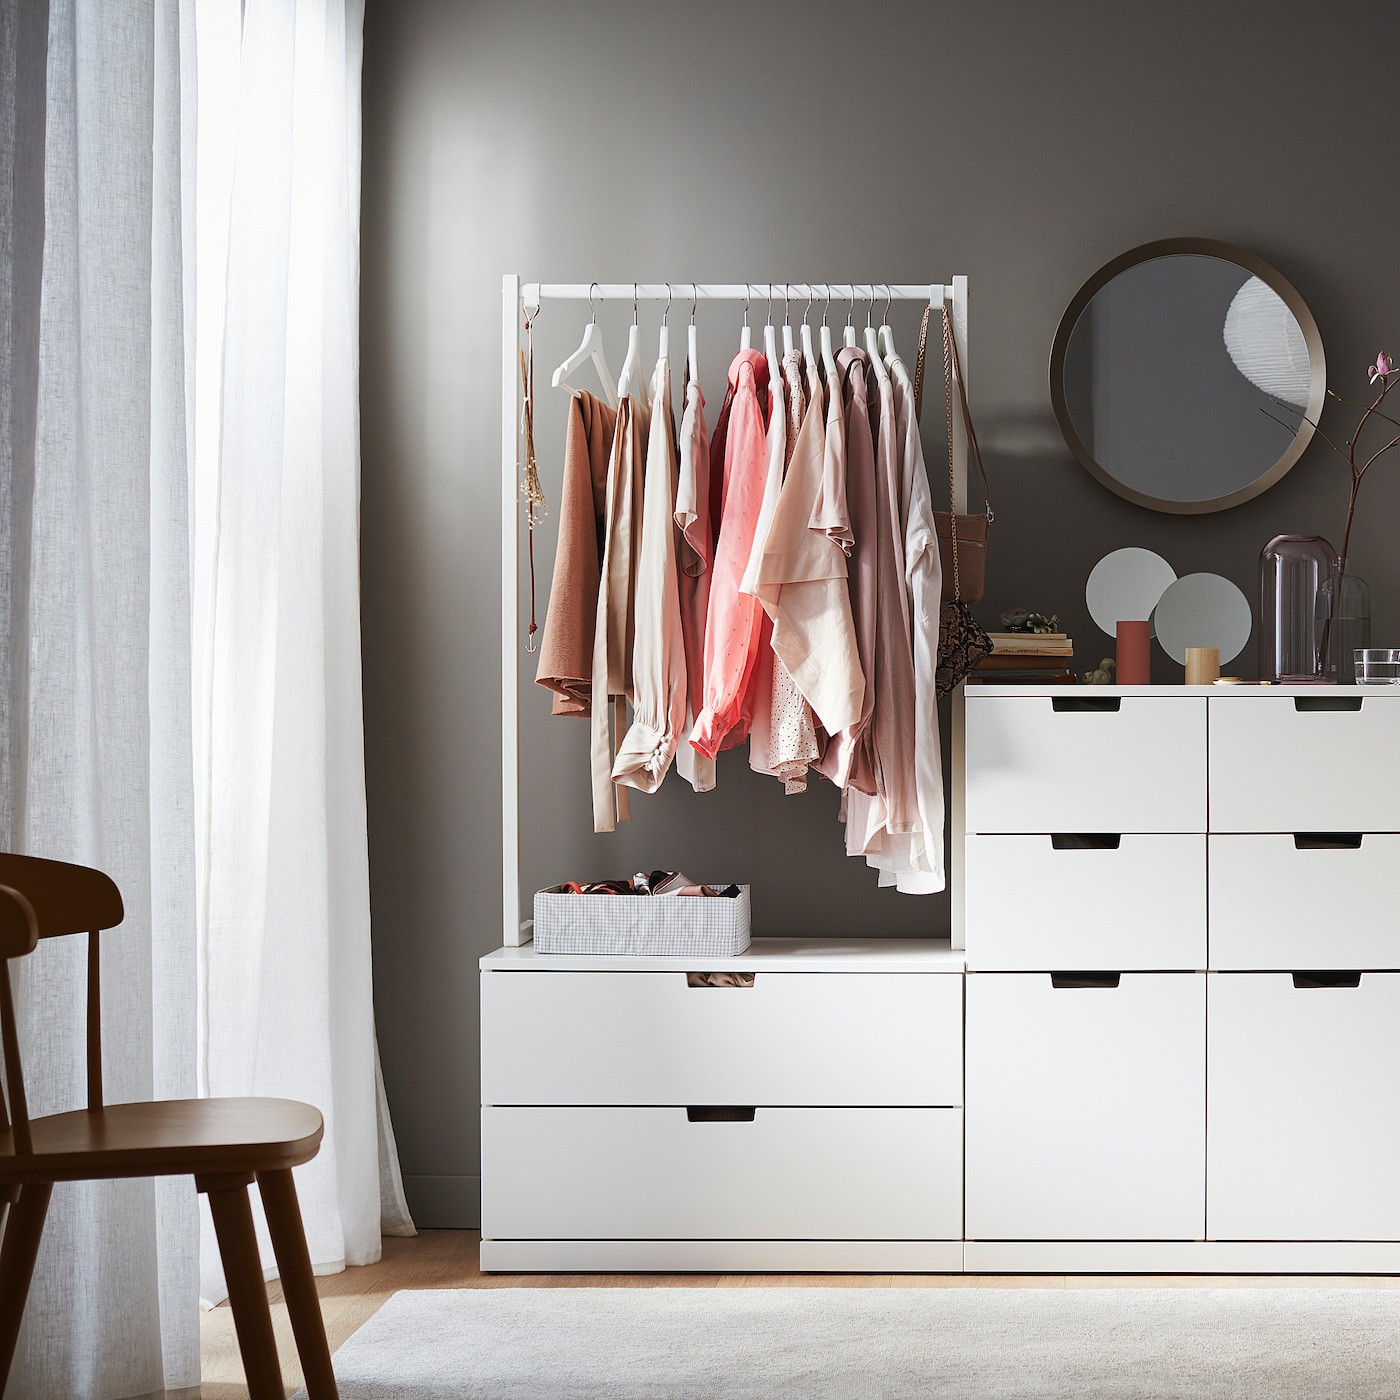 TRYSSE hanger, white/gray - IKEA